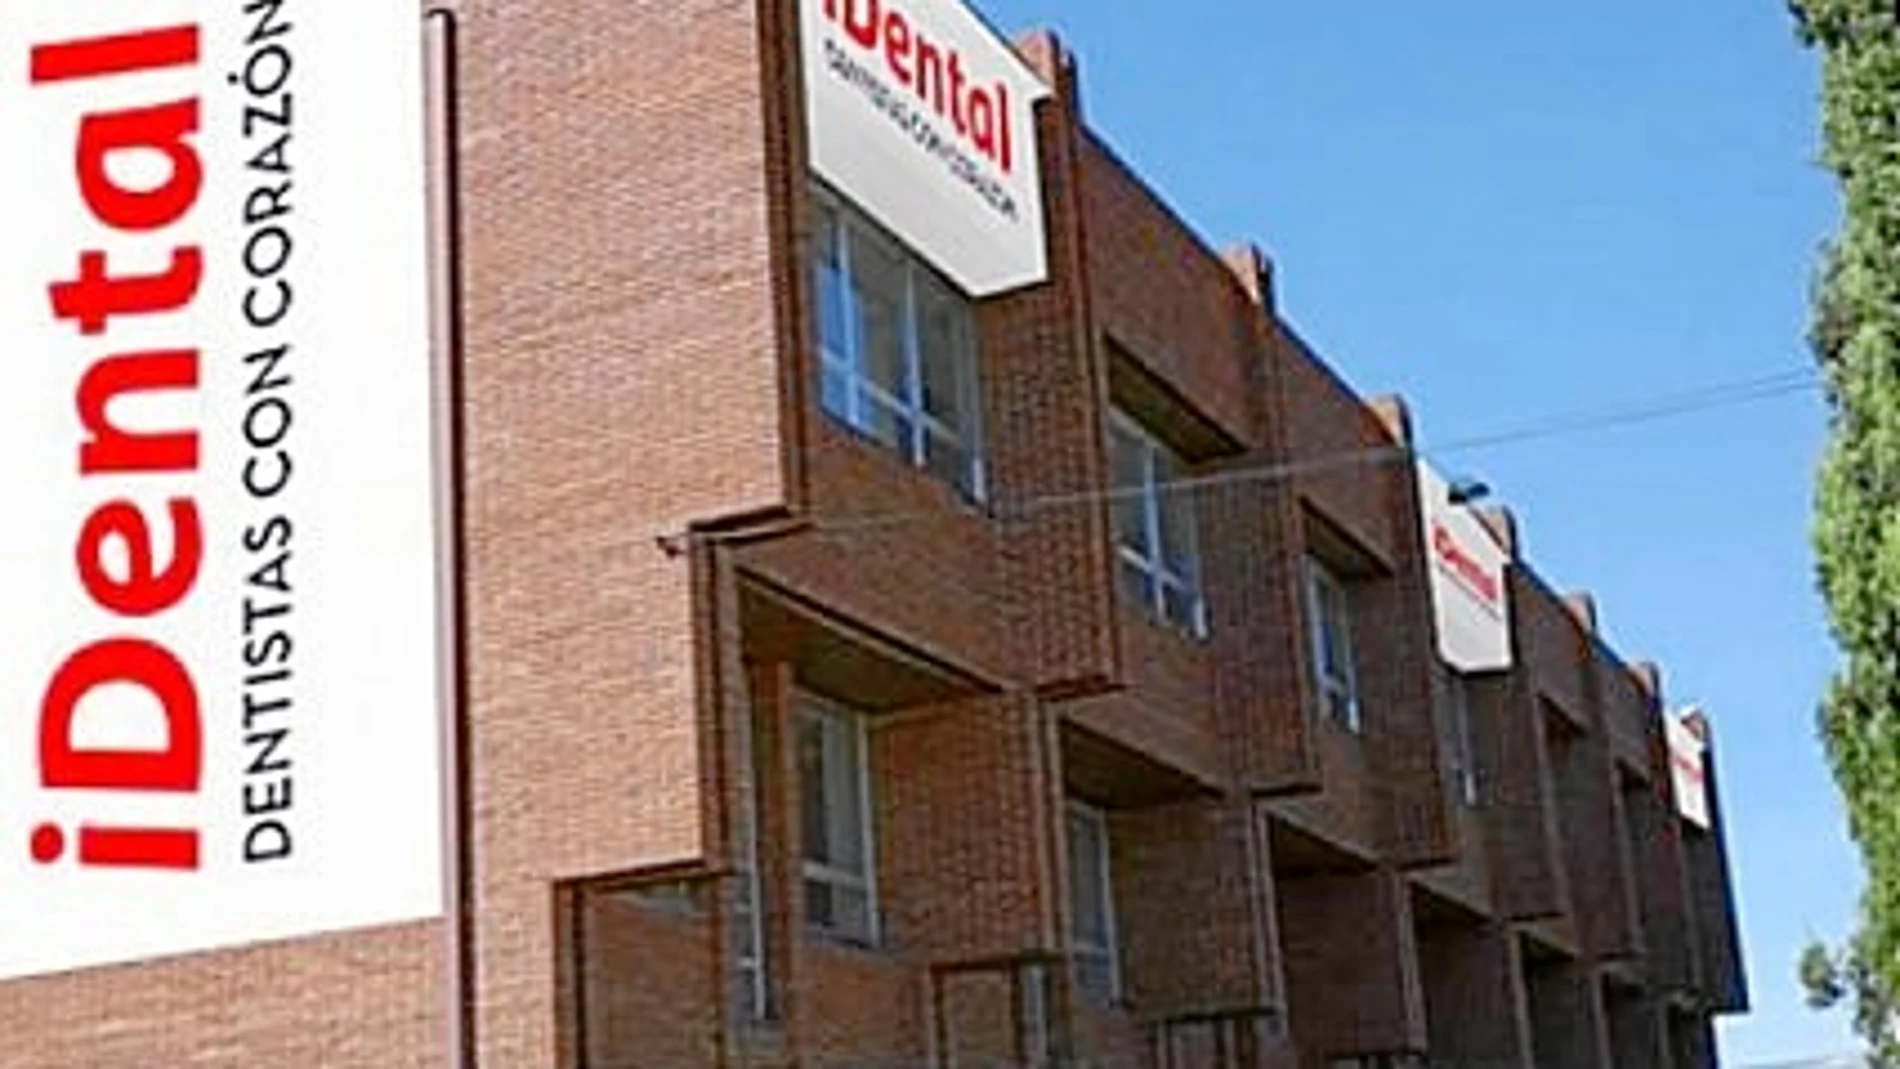 IDental tiene tres franquicias en Cataluña, en Barcelona, Tarragona y Girona, con más de 3.000 pacientes